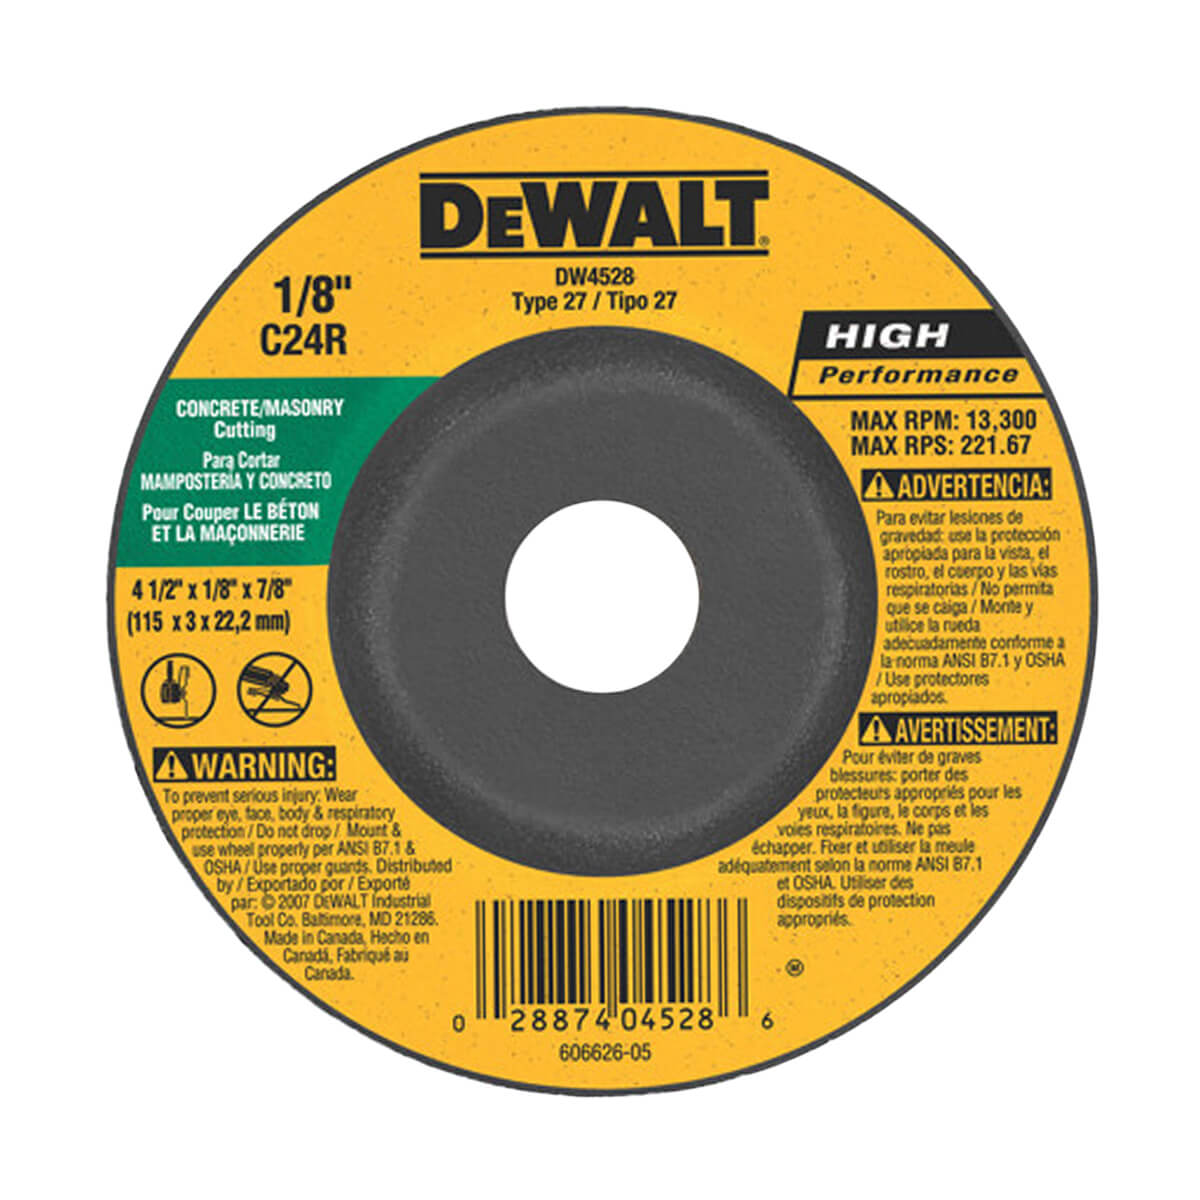 DEWALT Concrete/Masonry Cutting Wheel - 4-1/2" x 1/8" x 7/8"